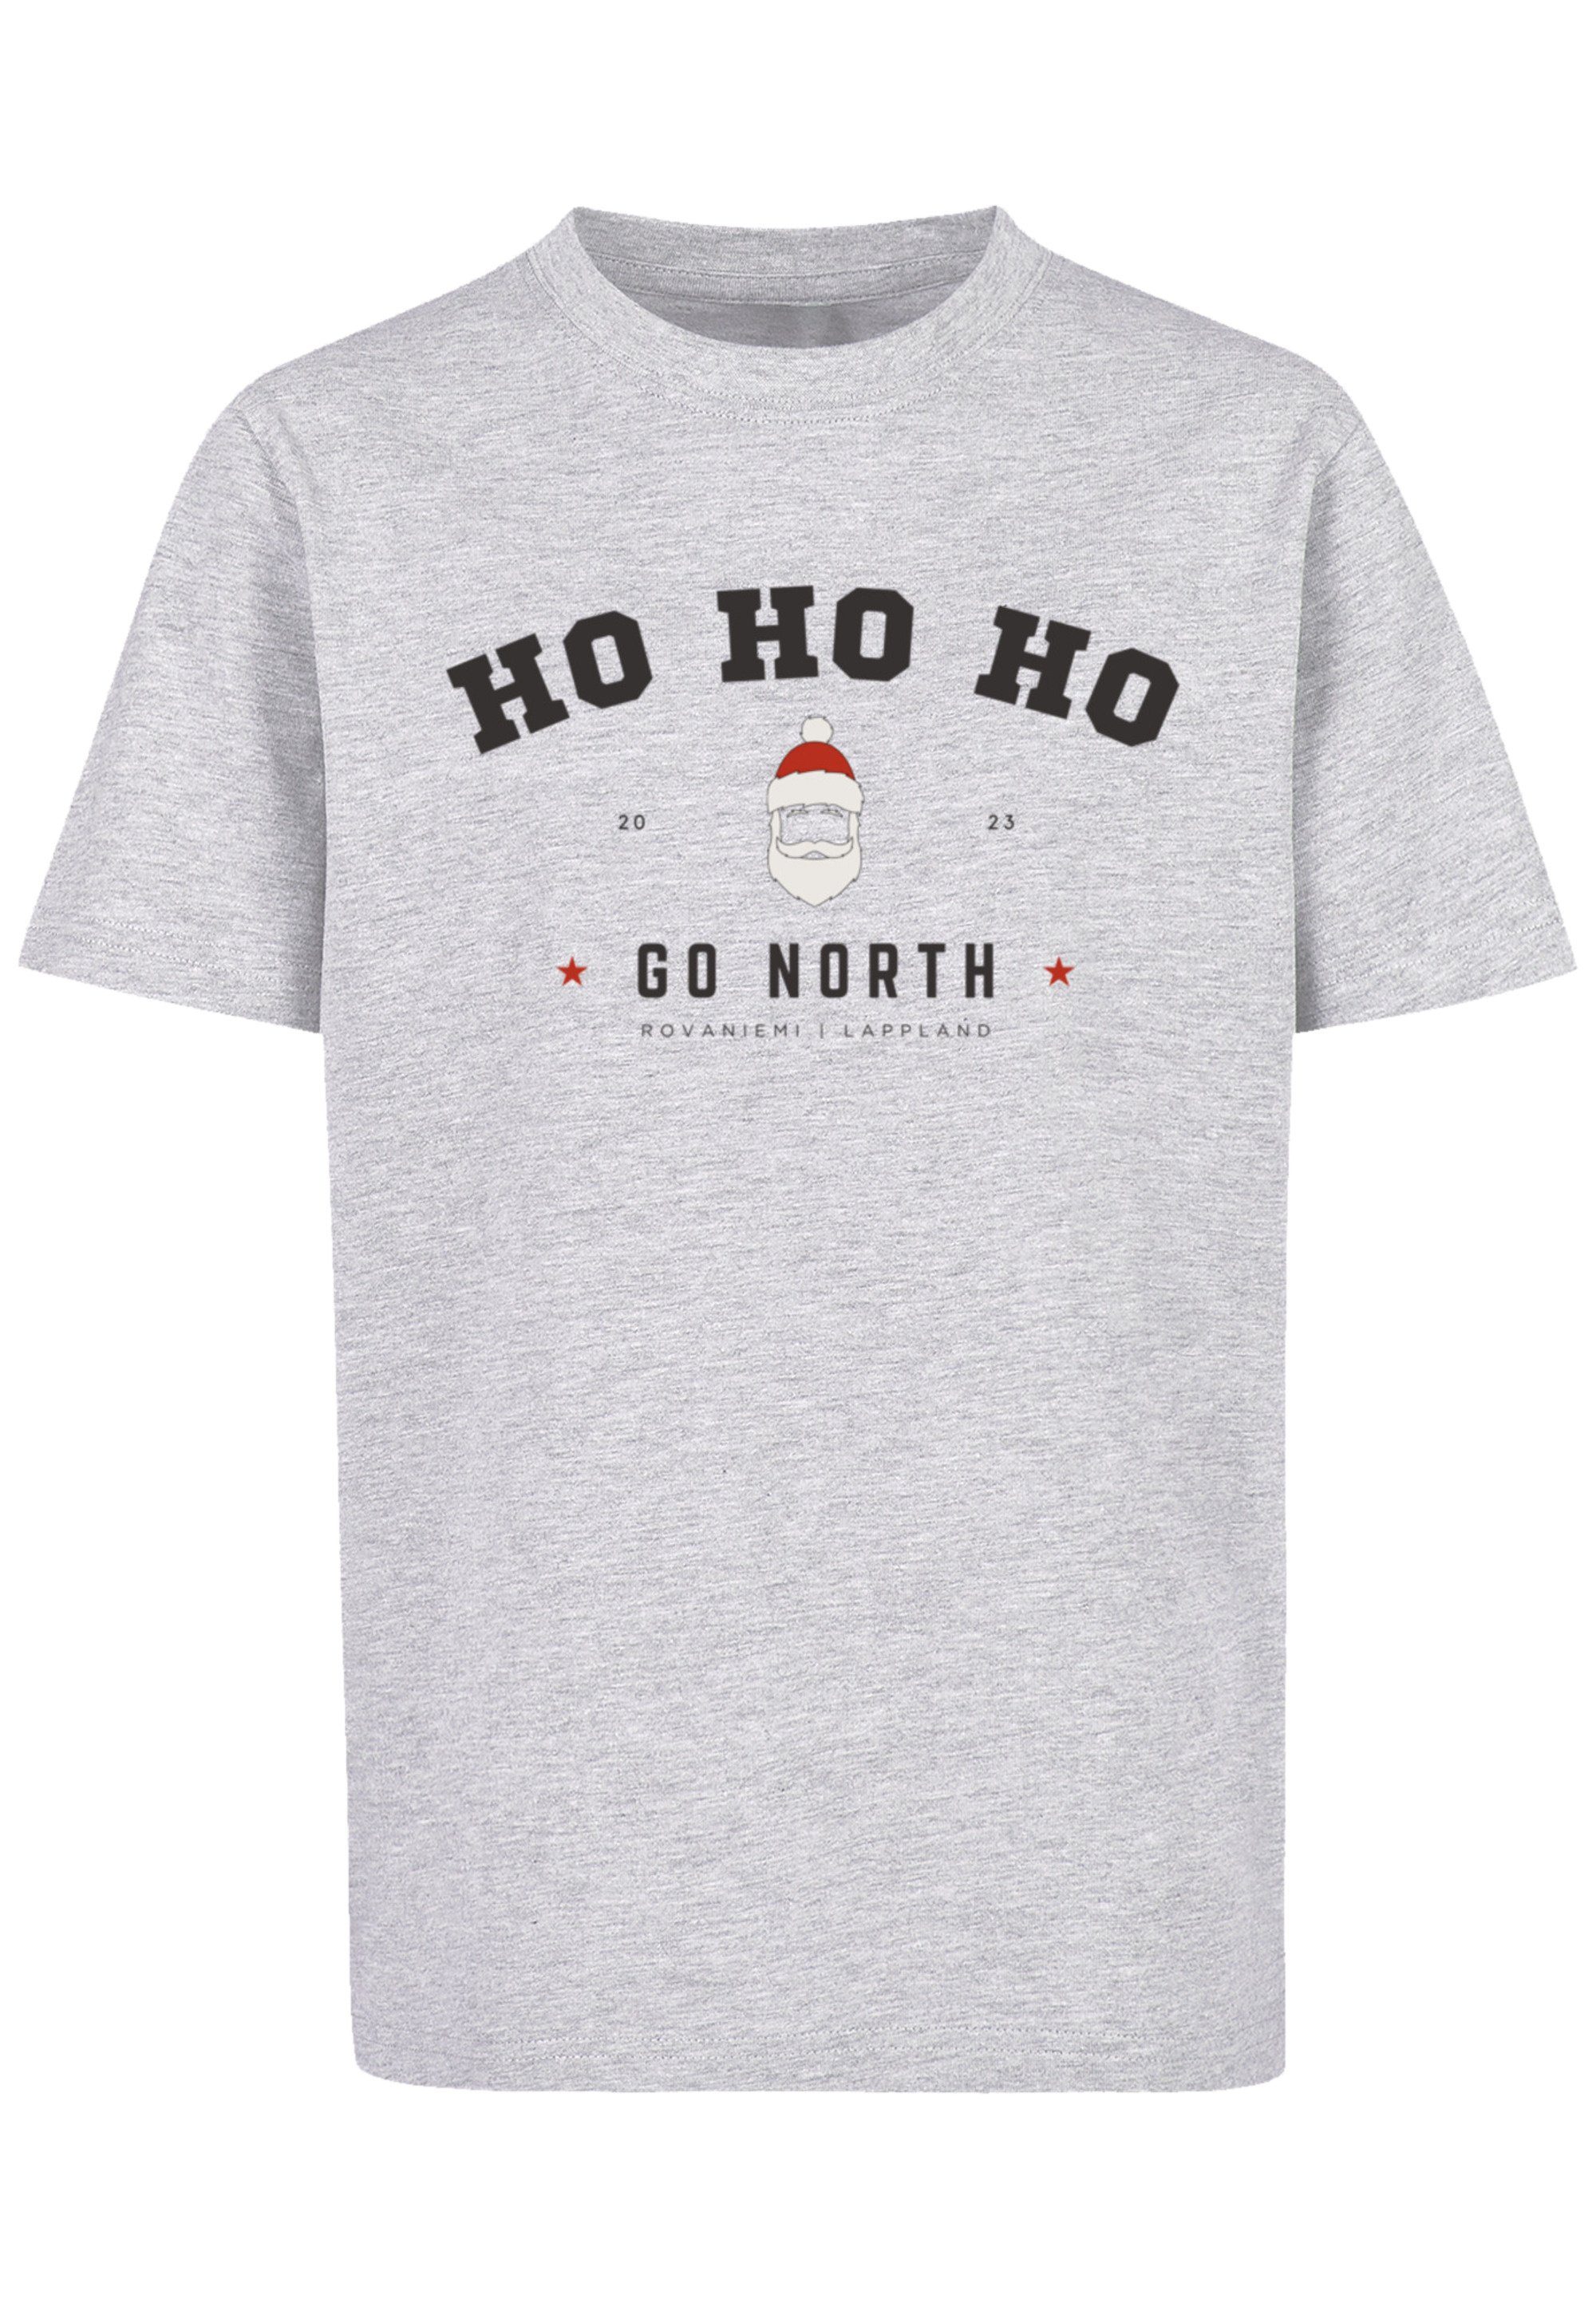 Ho Weihnachten, Ho F4NT4STIC grey Ho T-Shirt Logo heather Geschenk, Santa Claus Weihnachten